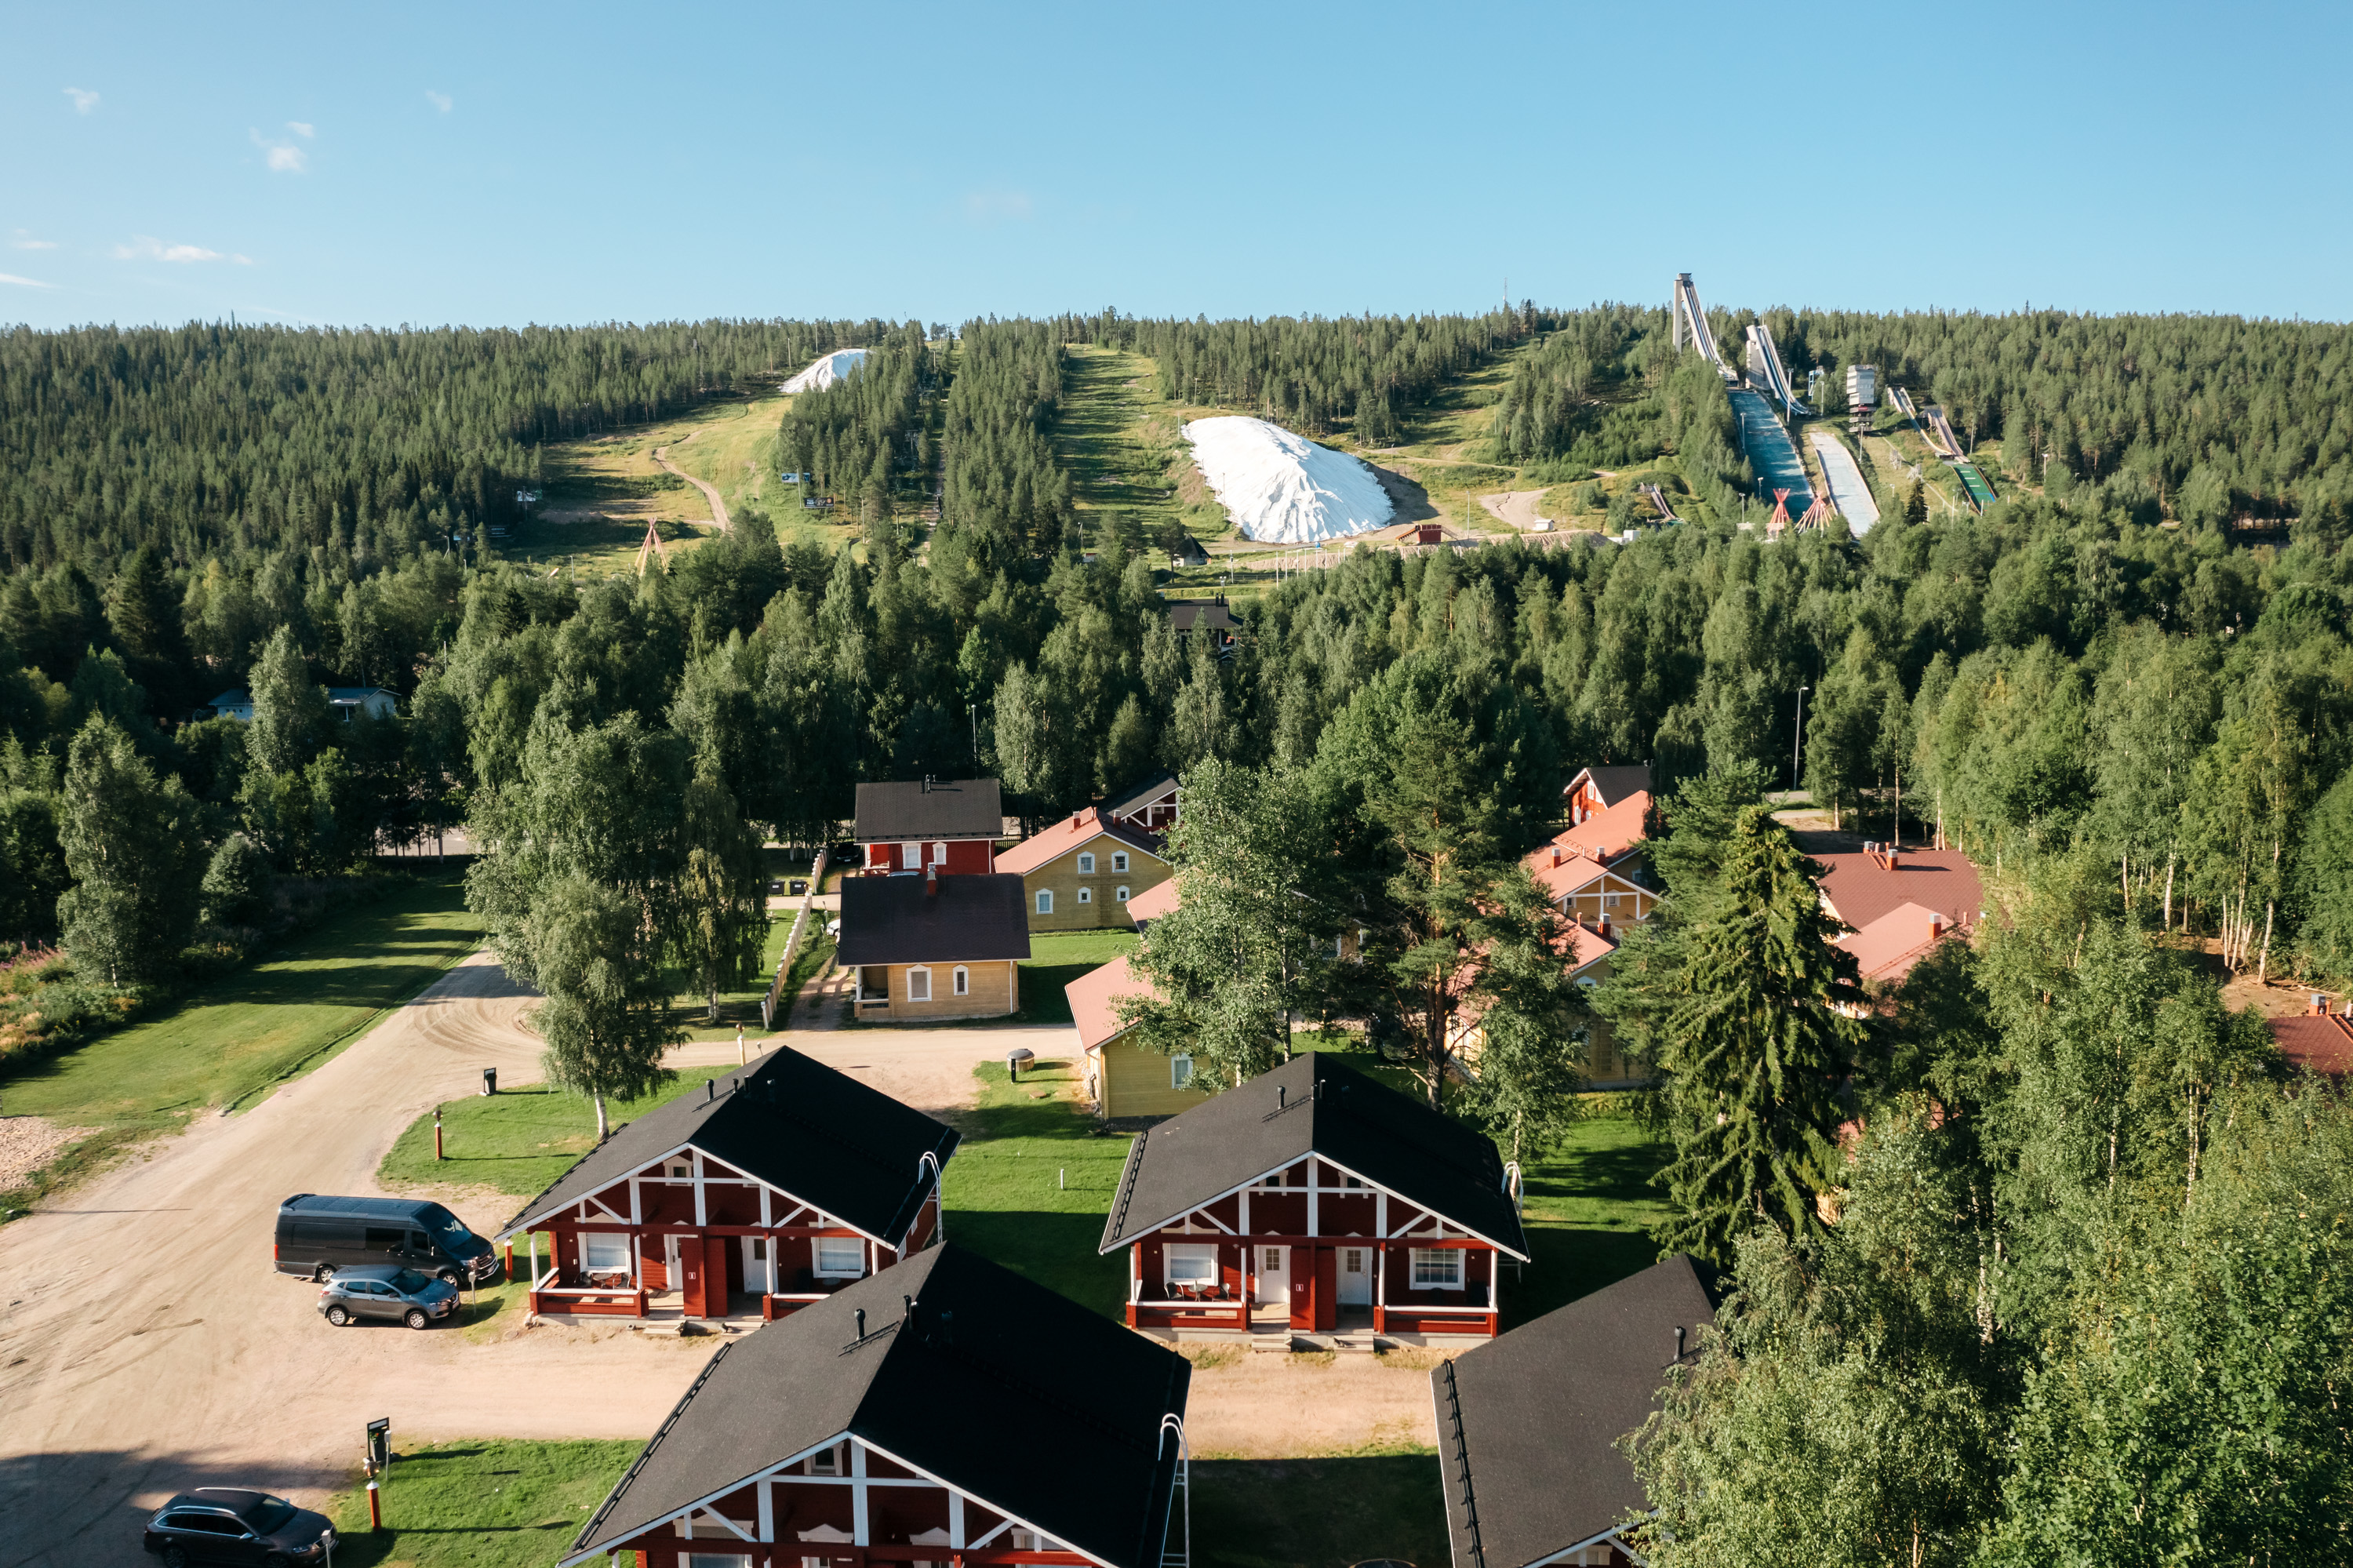 Lapland Hotels Ounasvaara Chalets - Hotelli - Majoitus - Rovaniemi -  Lapland Hotels